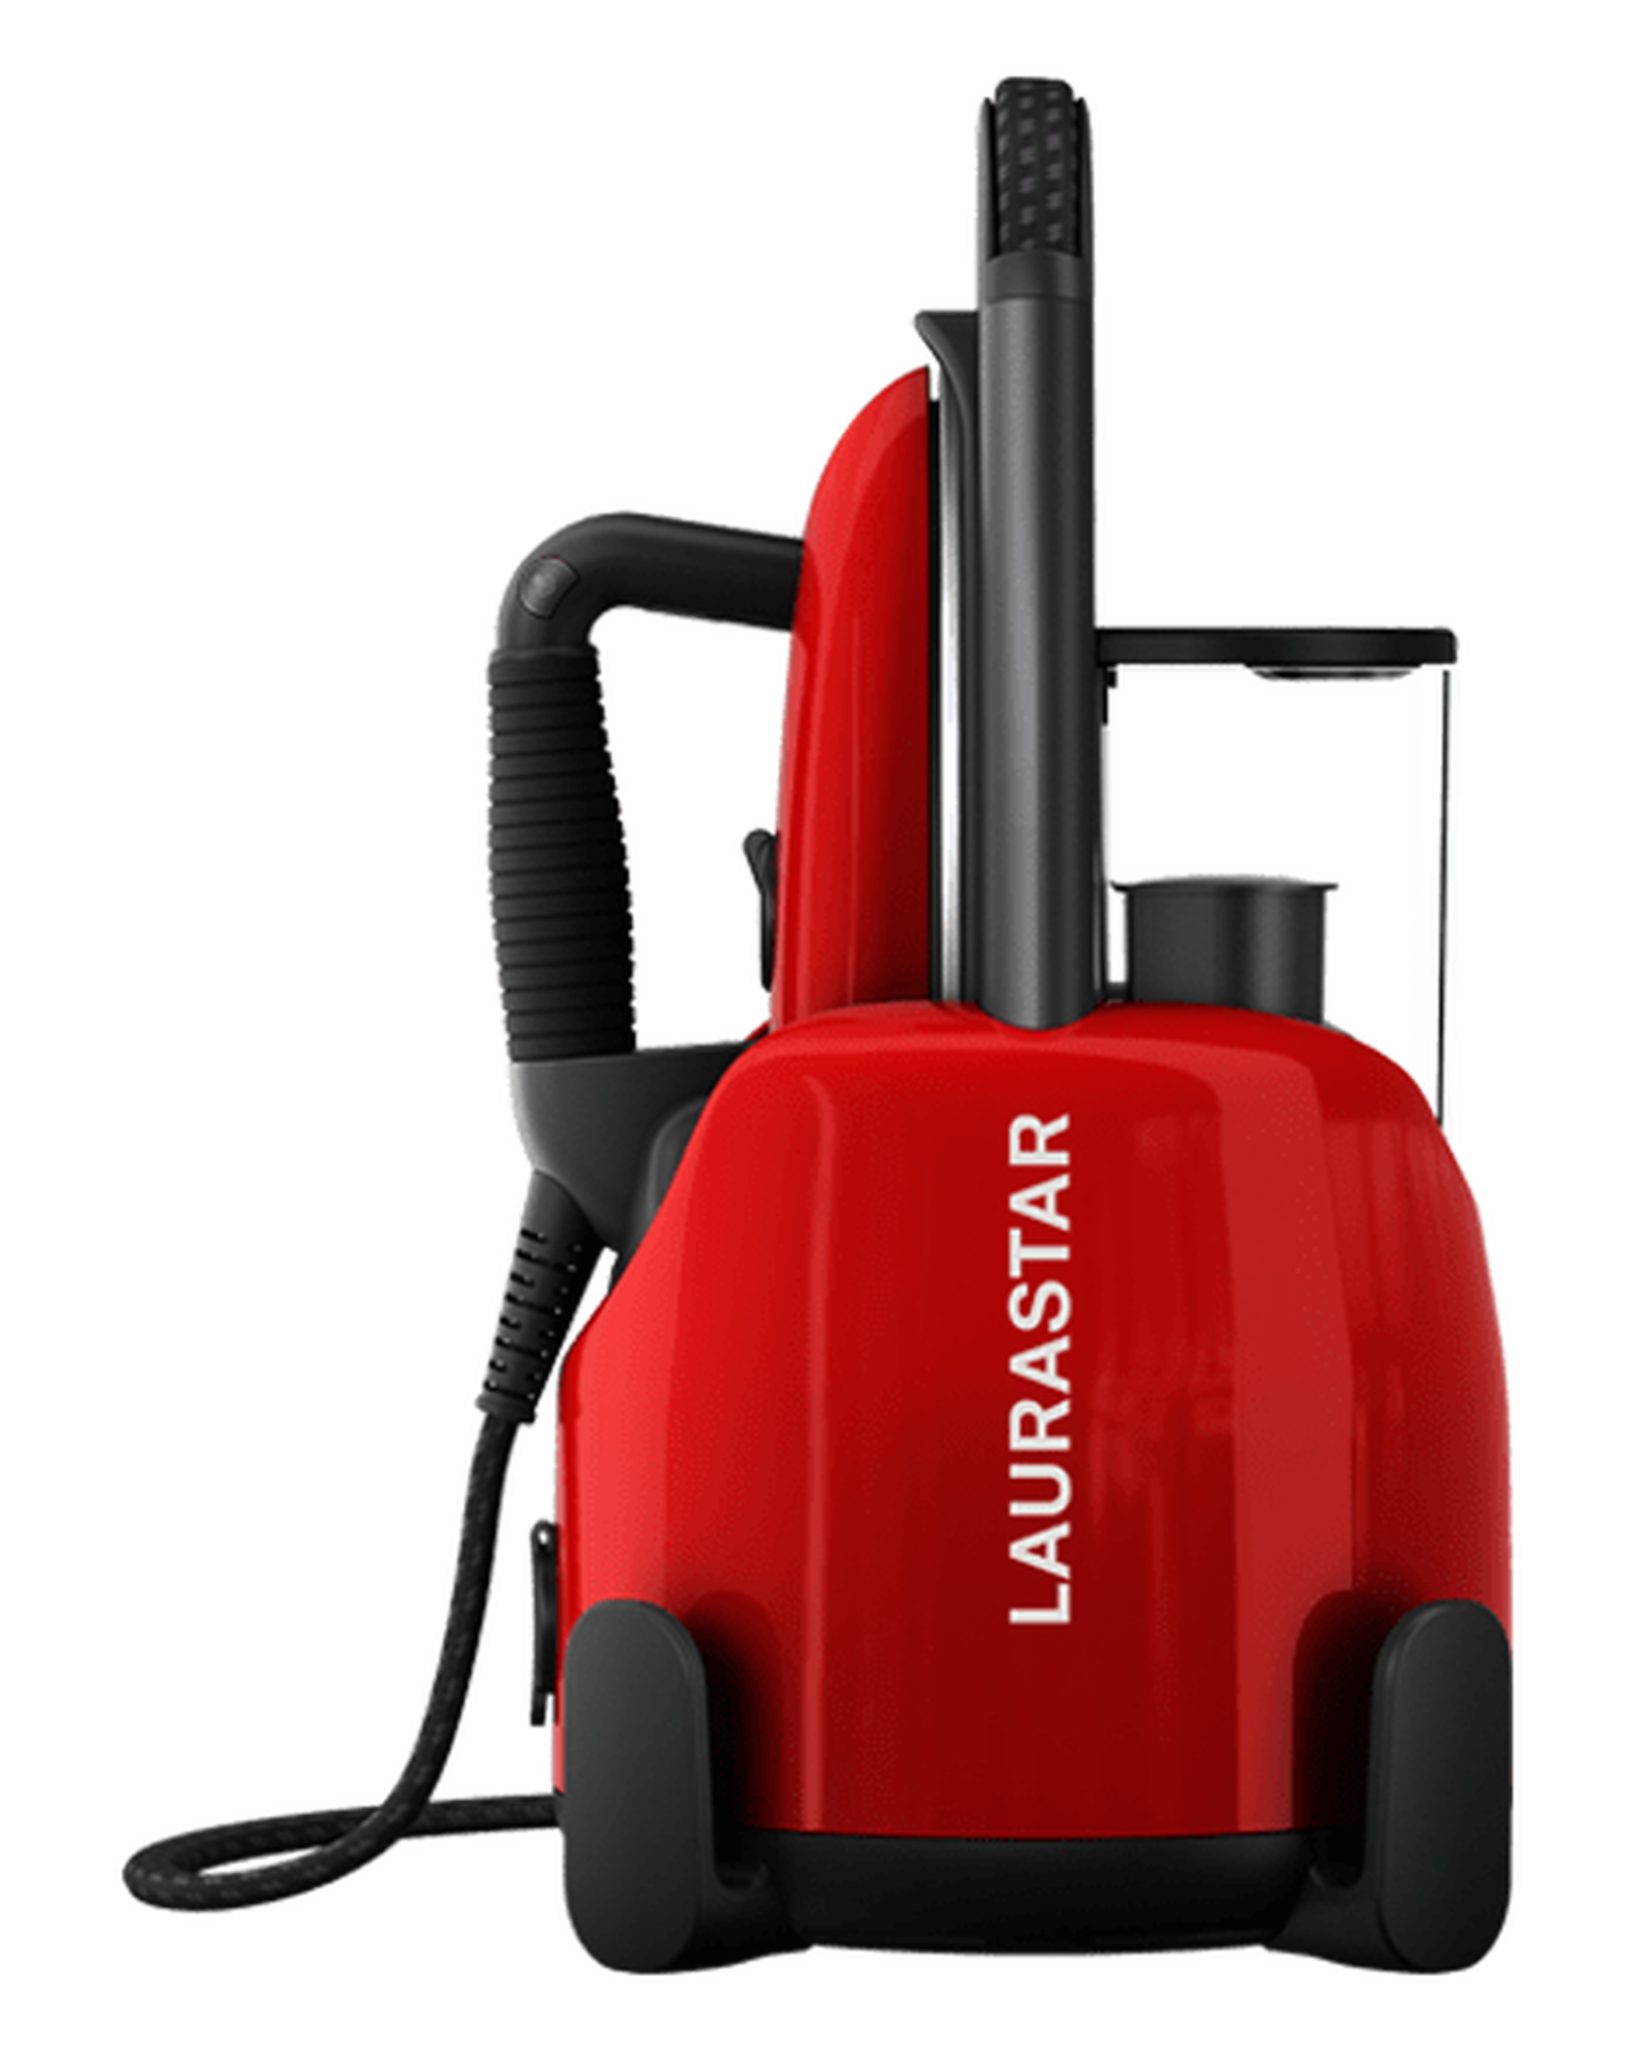 LAURASTAR Bügelsystem Laurastar Lift Red Original